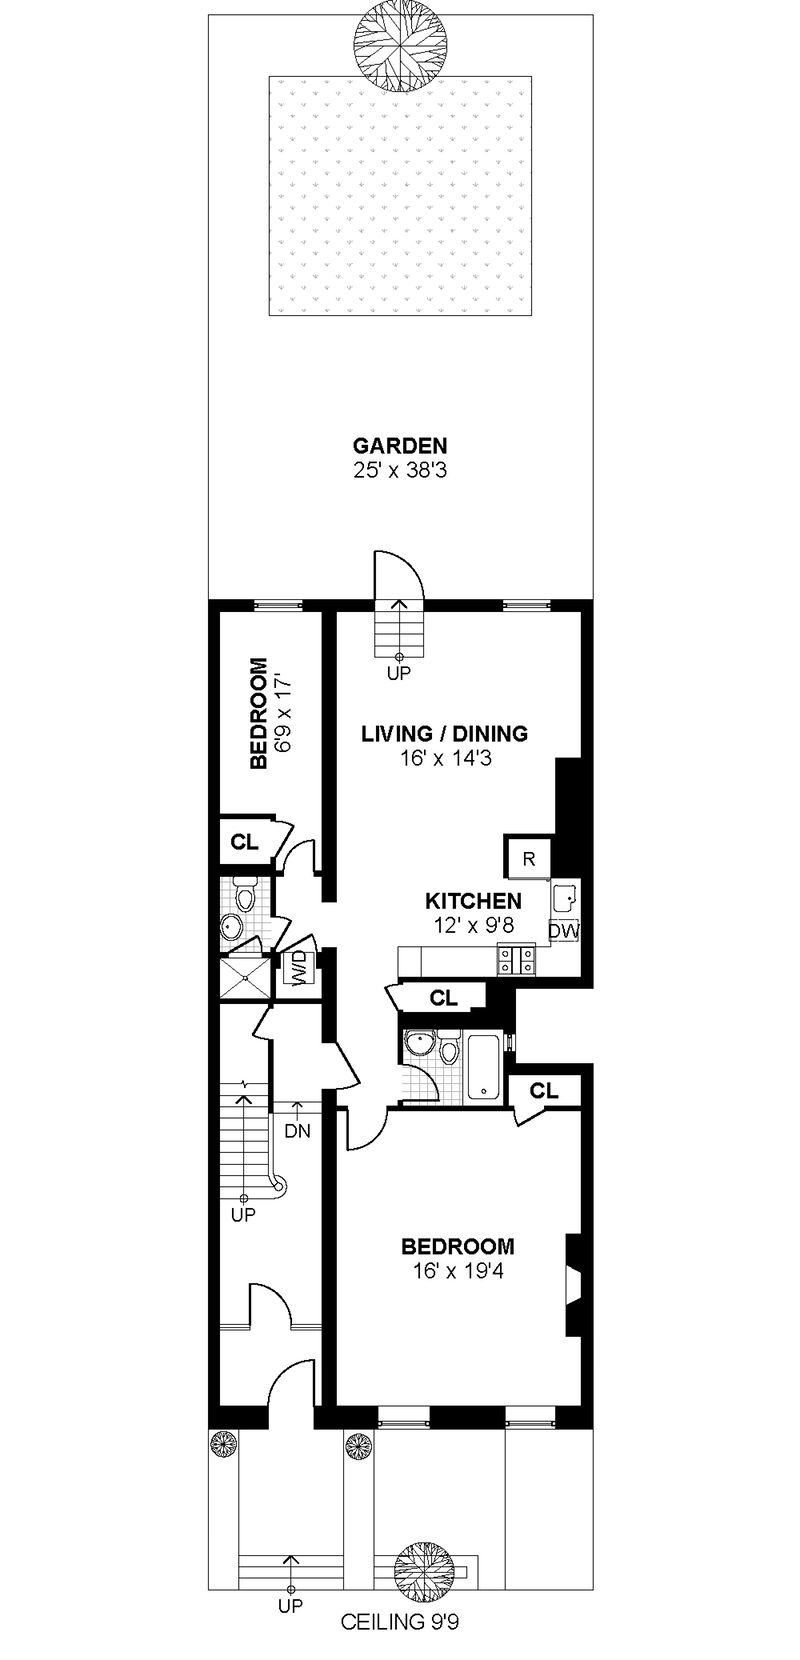 Floorplan for 138 Joralemon Street, 1